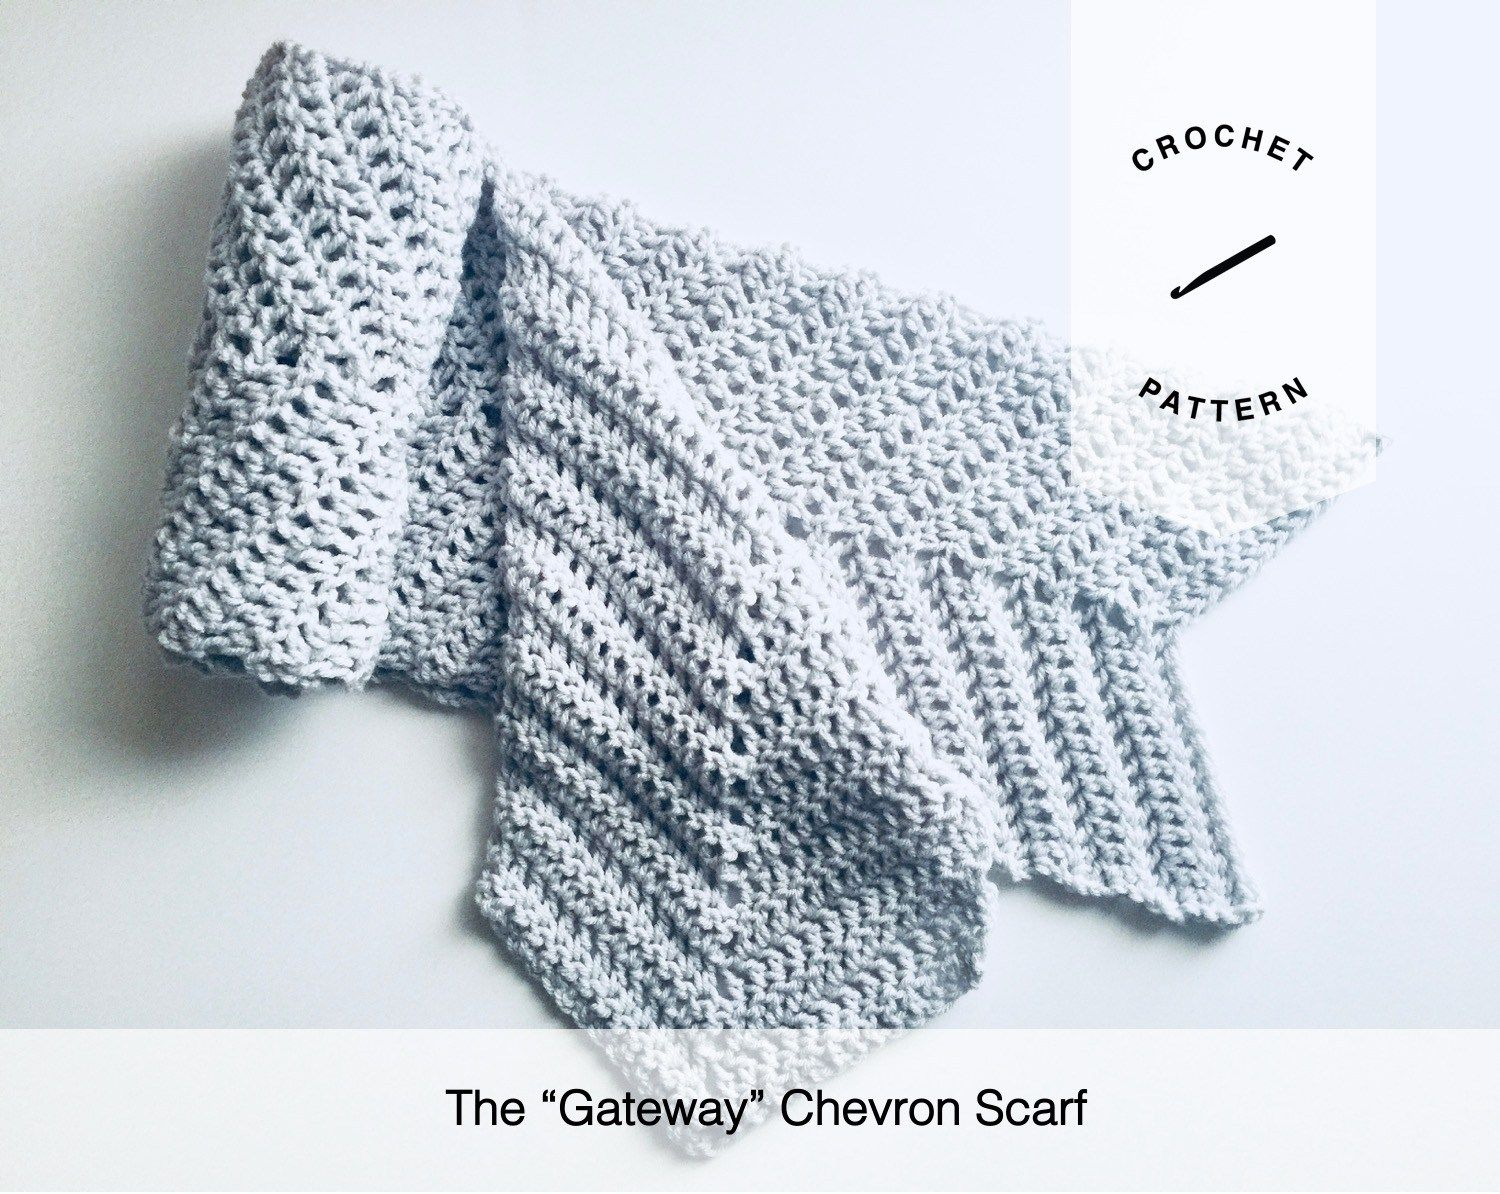 Chevron Crochet Pattern Scarf The Gateway Chevron Scarf Free Crochet Pattern Crochet Scarves